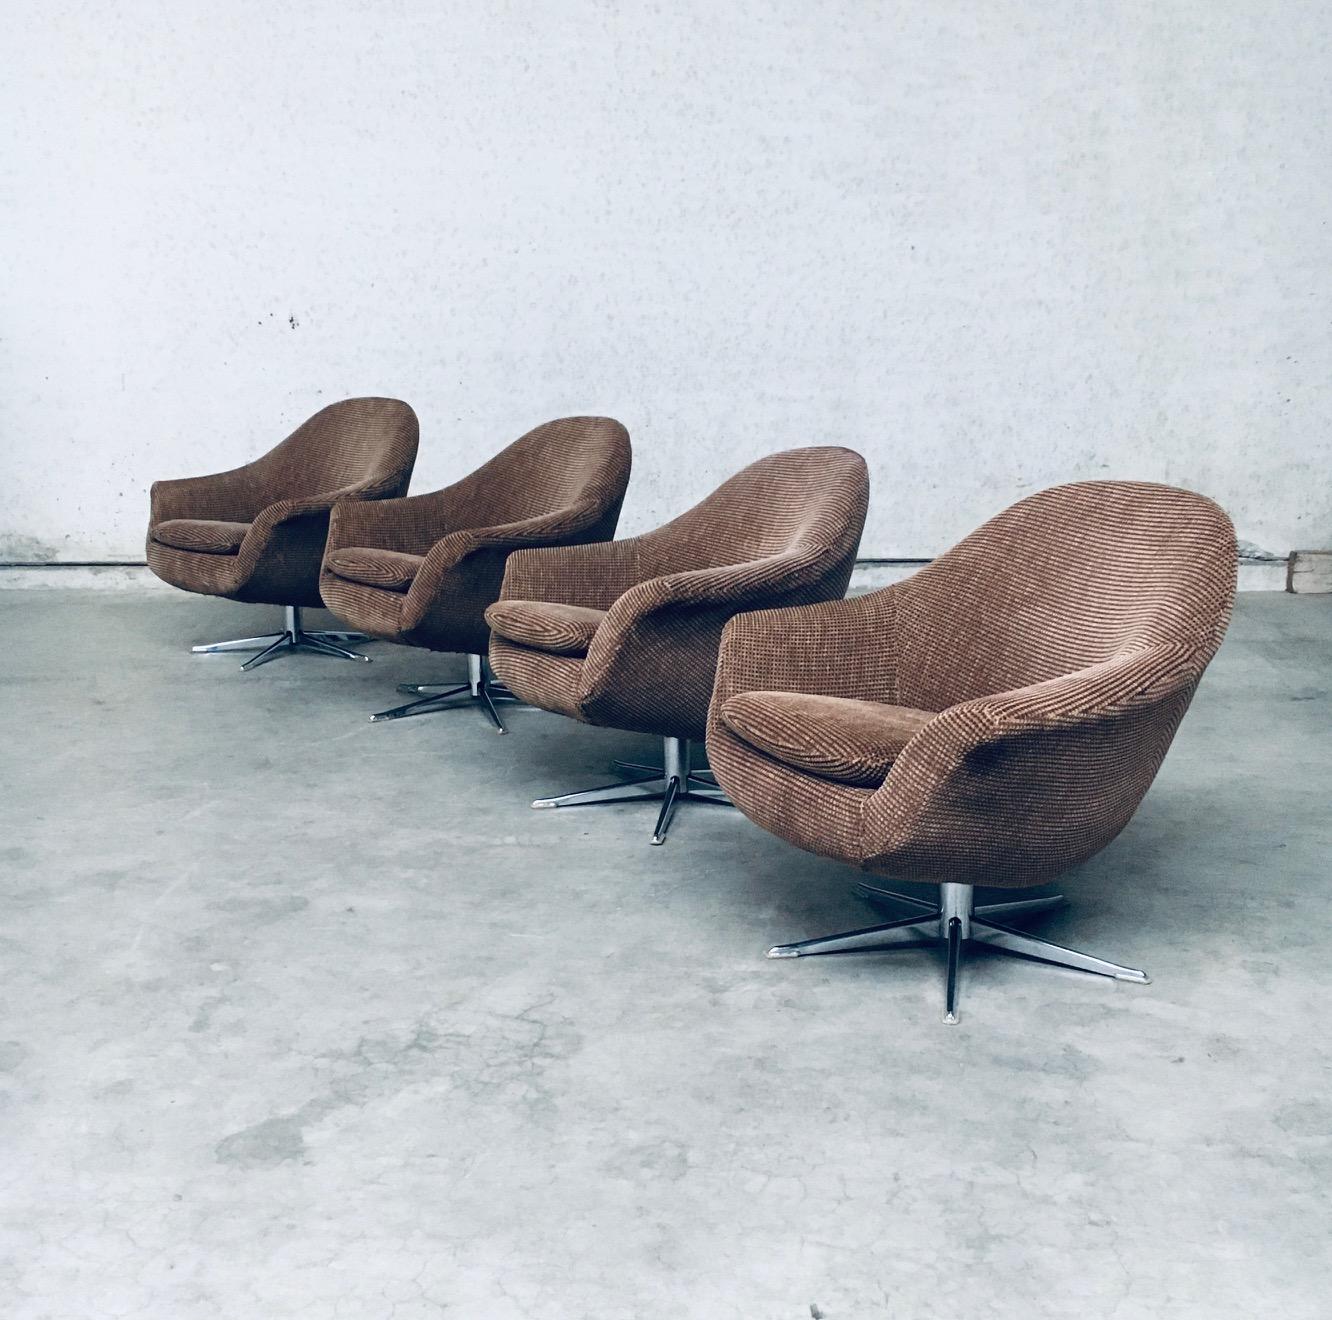 Vintage Mid-Century Modern Scandinavian Design Space Age Swivel EGG Lounge Chair set of 4. Fabriqué dans les années 1970. Dans le style d'Overman, Suède. Modèle pod sur base pivotante. Tissu marron sur pieds chromés. Les 4 sont en bon état général